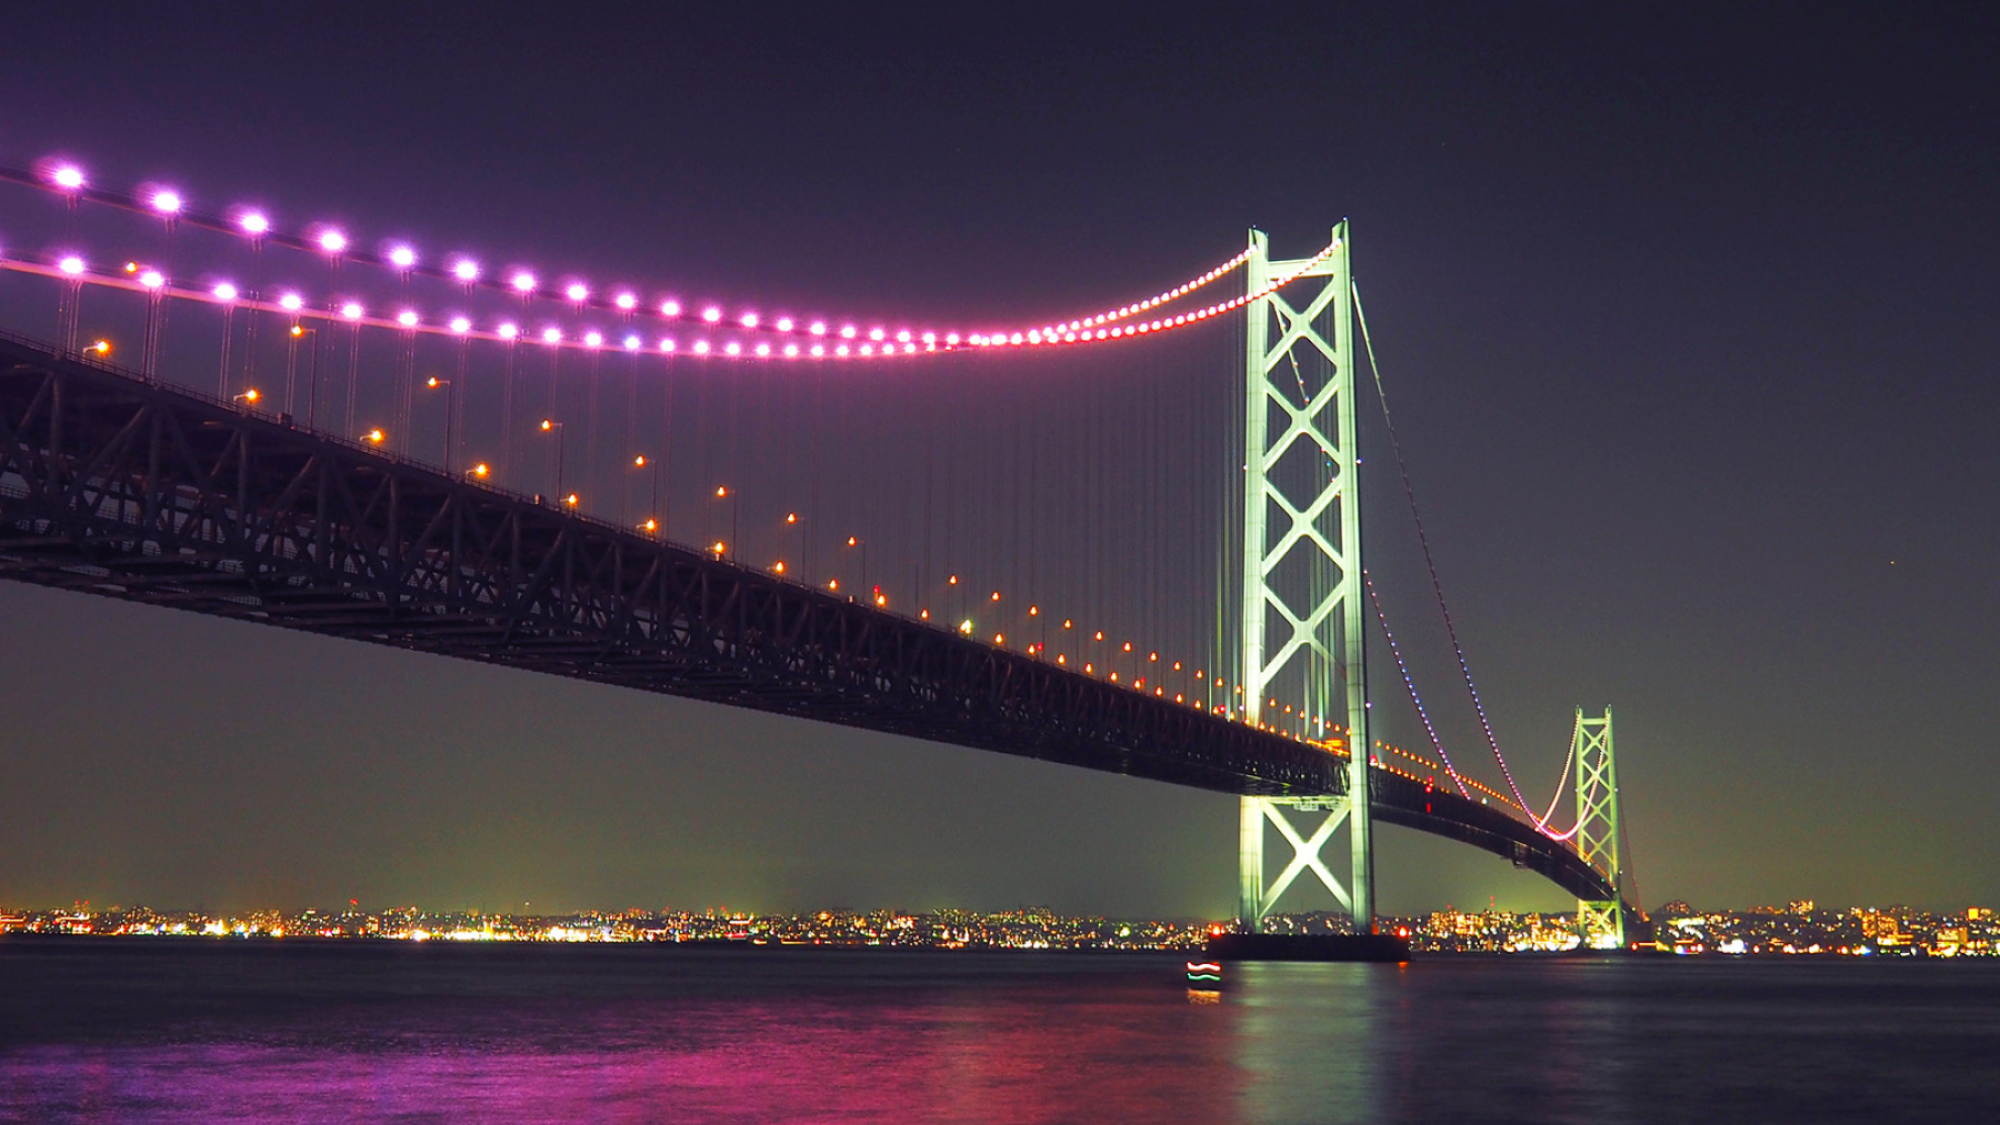 Download images for free, Akashi Kaikyo Bridge, Striking wallpapers, High quality, 2000x1130 HD Desktop